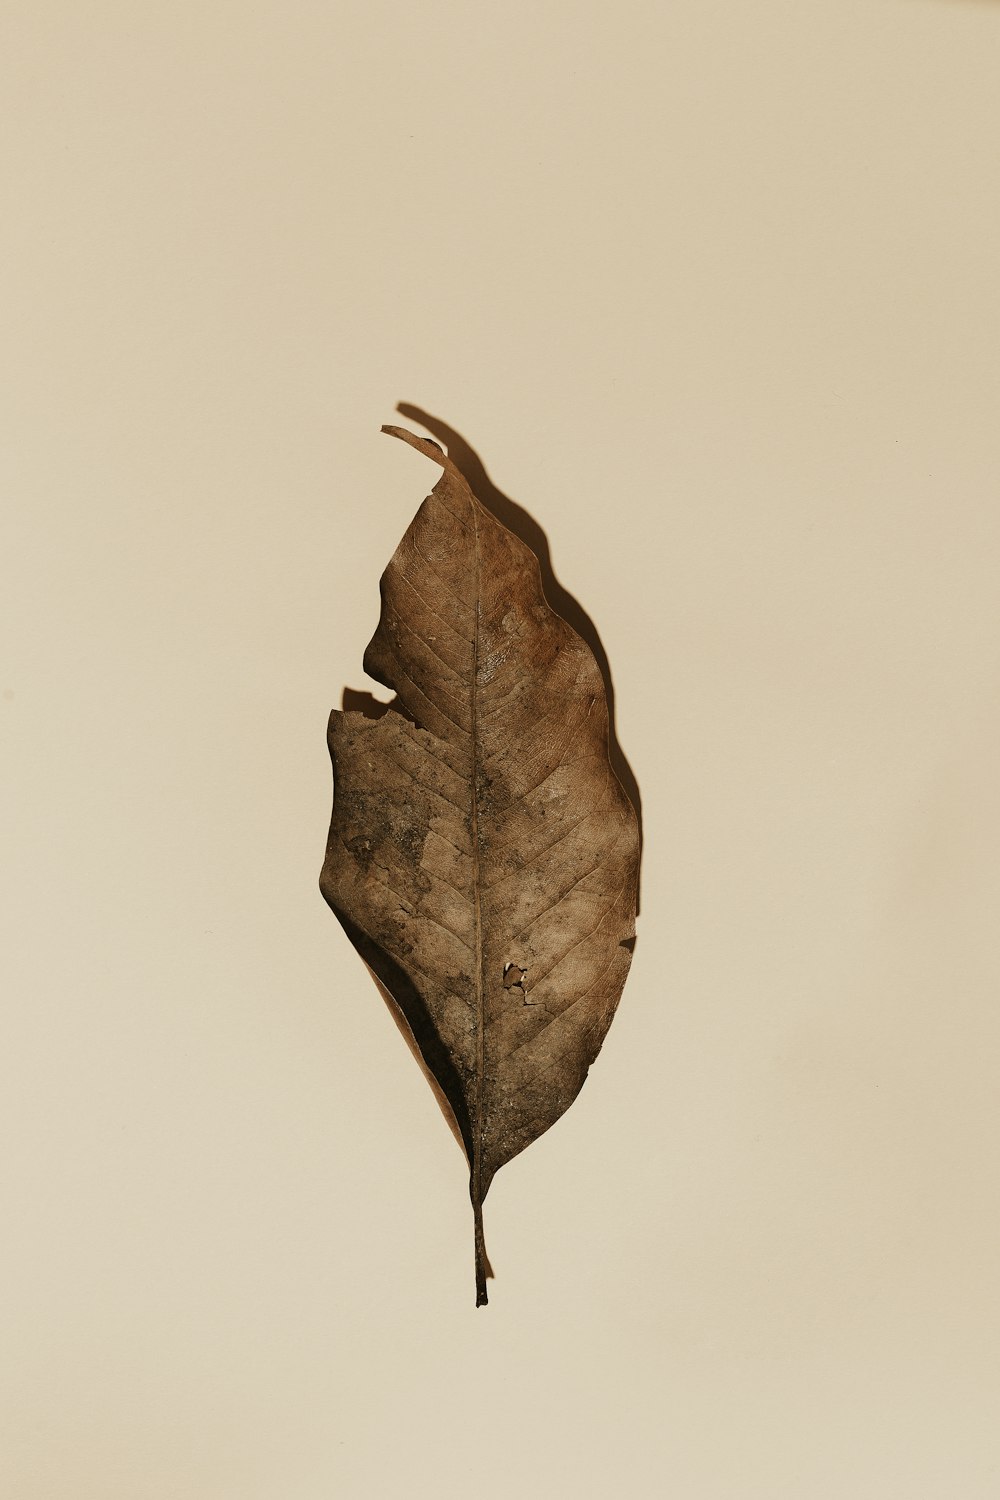 30k+ Dry Leaf Pictures  Download Free Images on Unsplash